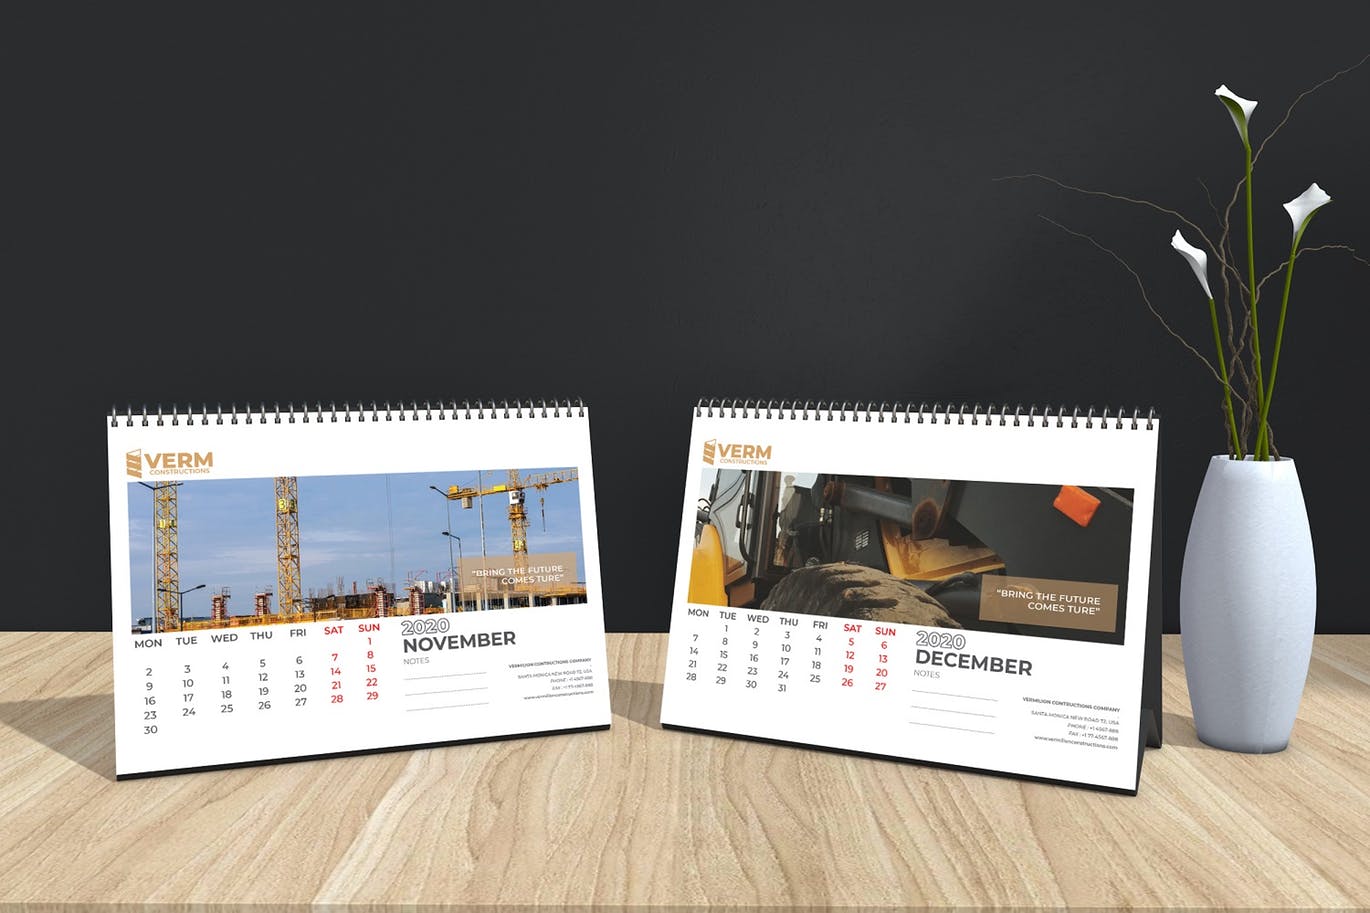 2020年建筑主题台历&挂墙日历表设计模板 Construction Wall & Table Calendar 2020插图14